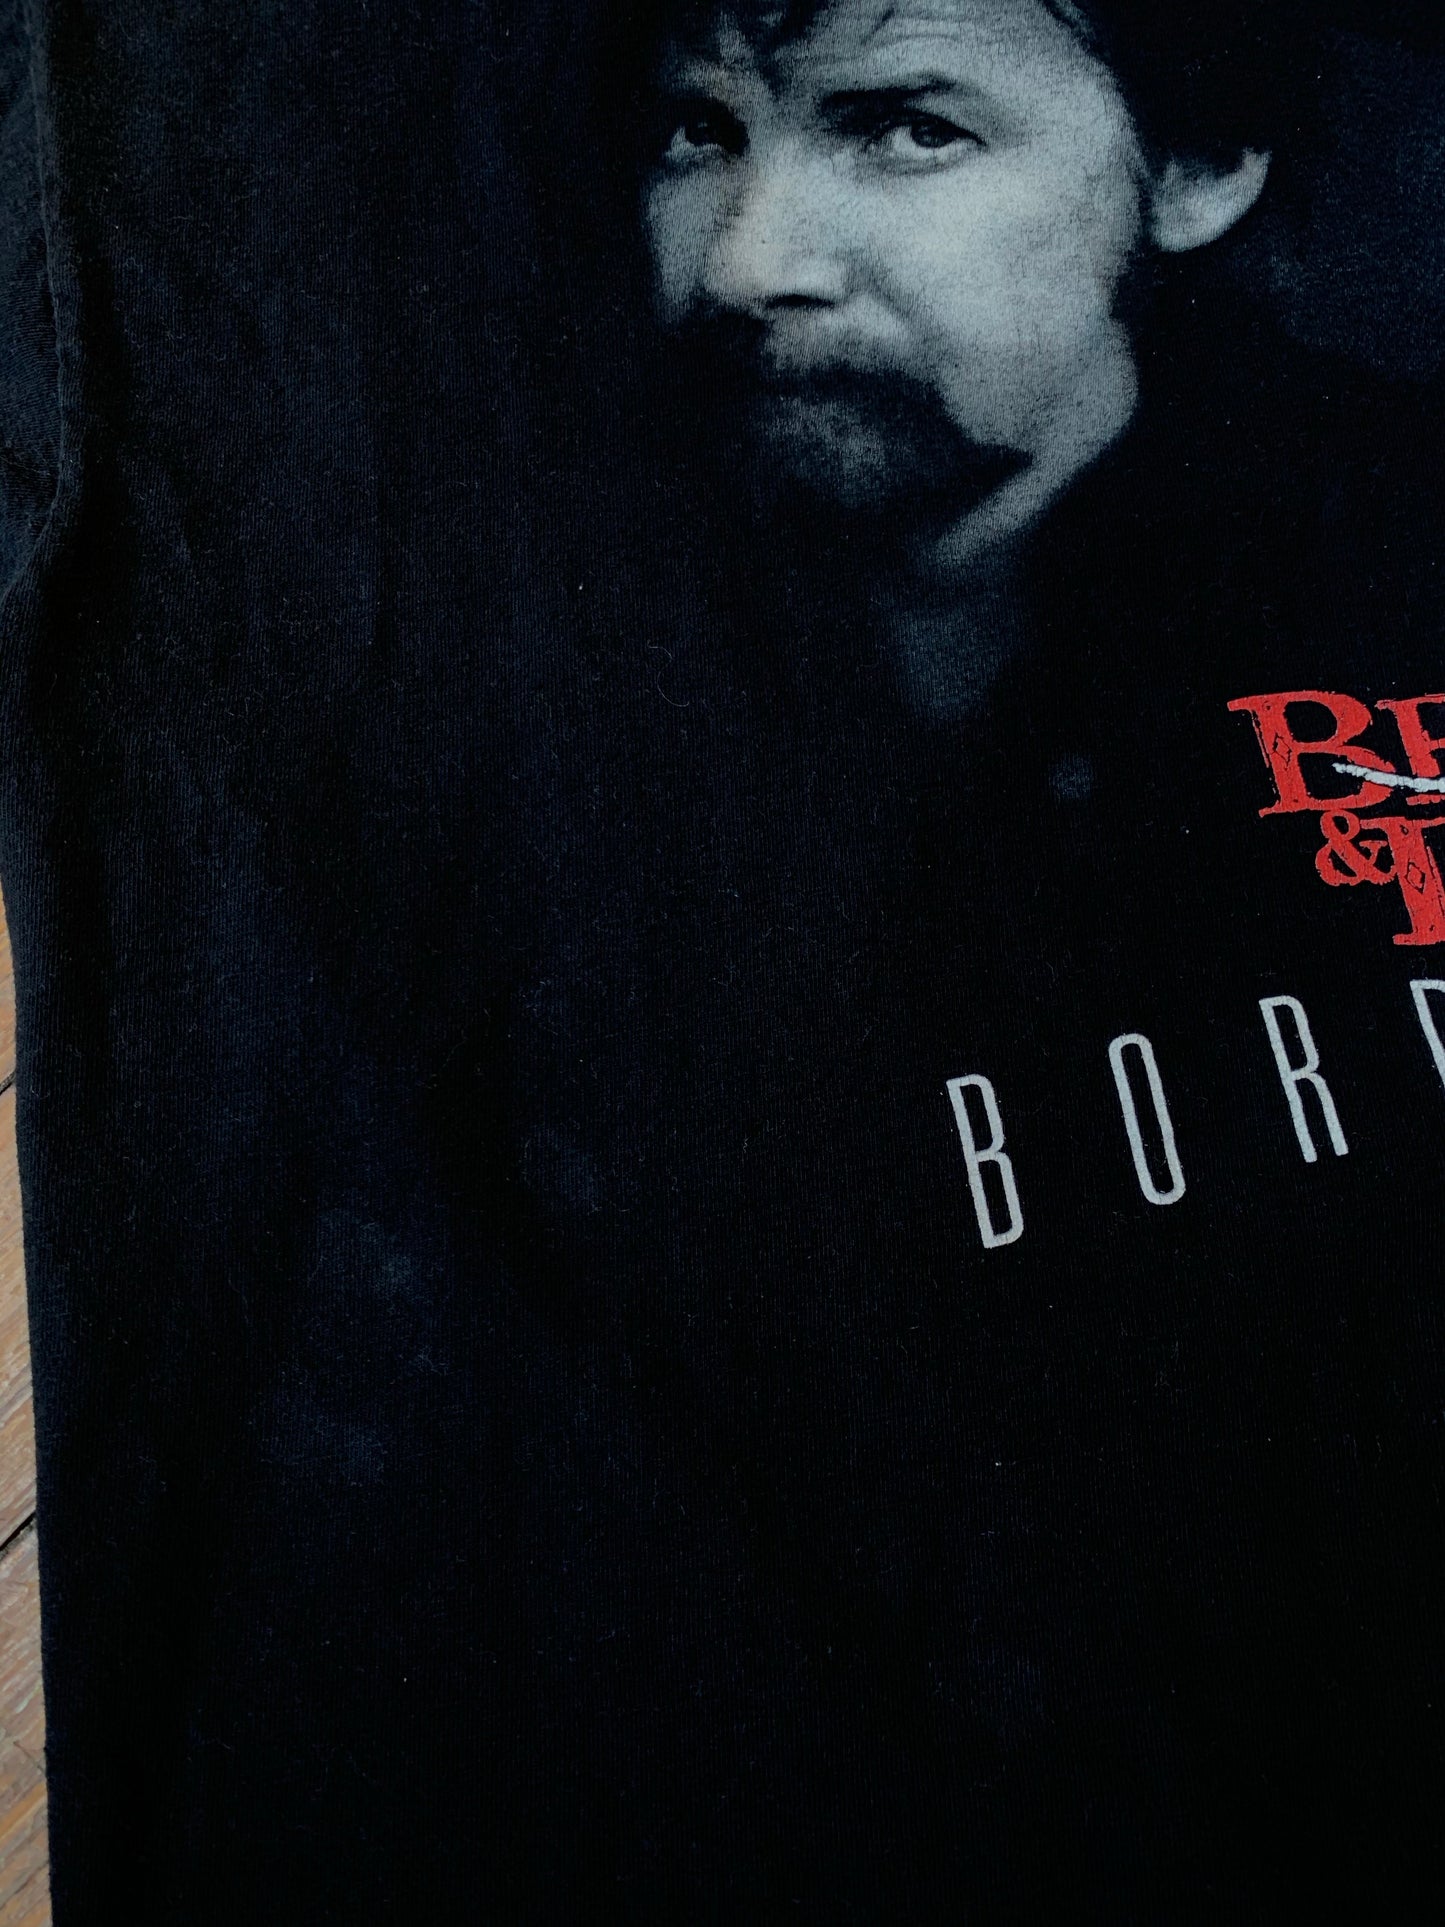 1996 Brooks & Dunn Borderline T-Shirt